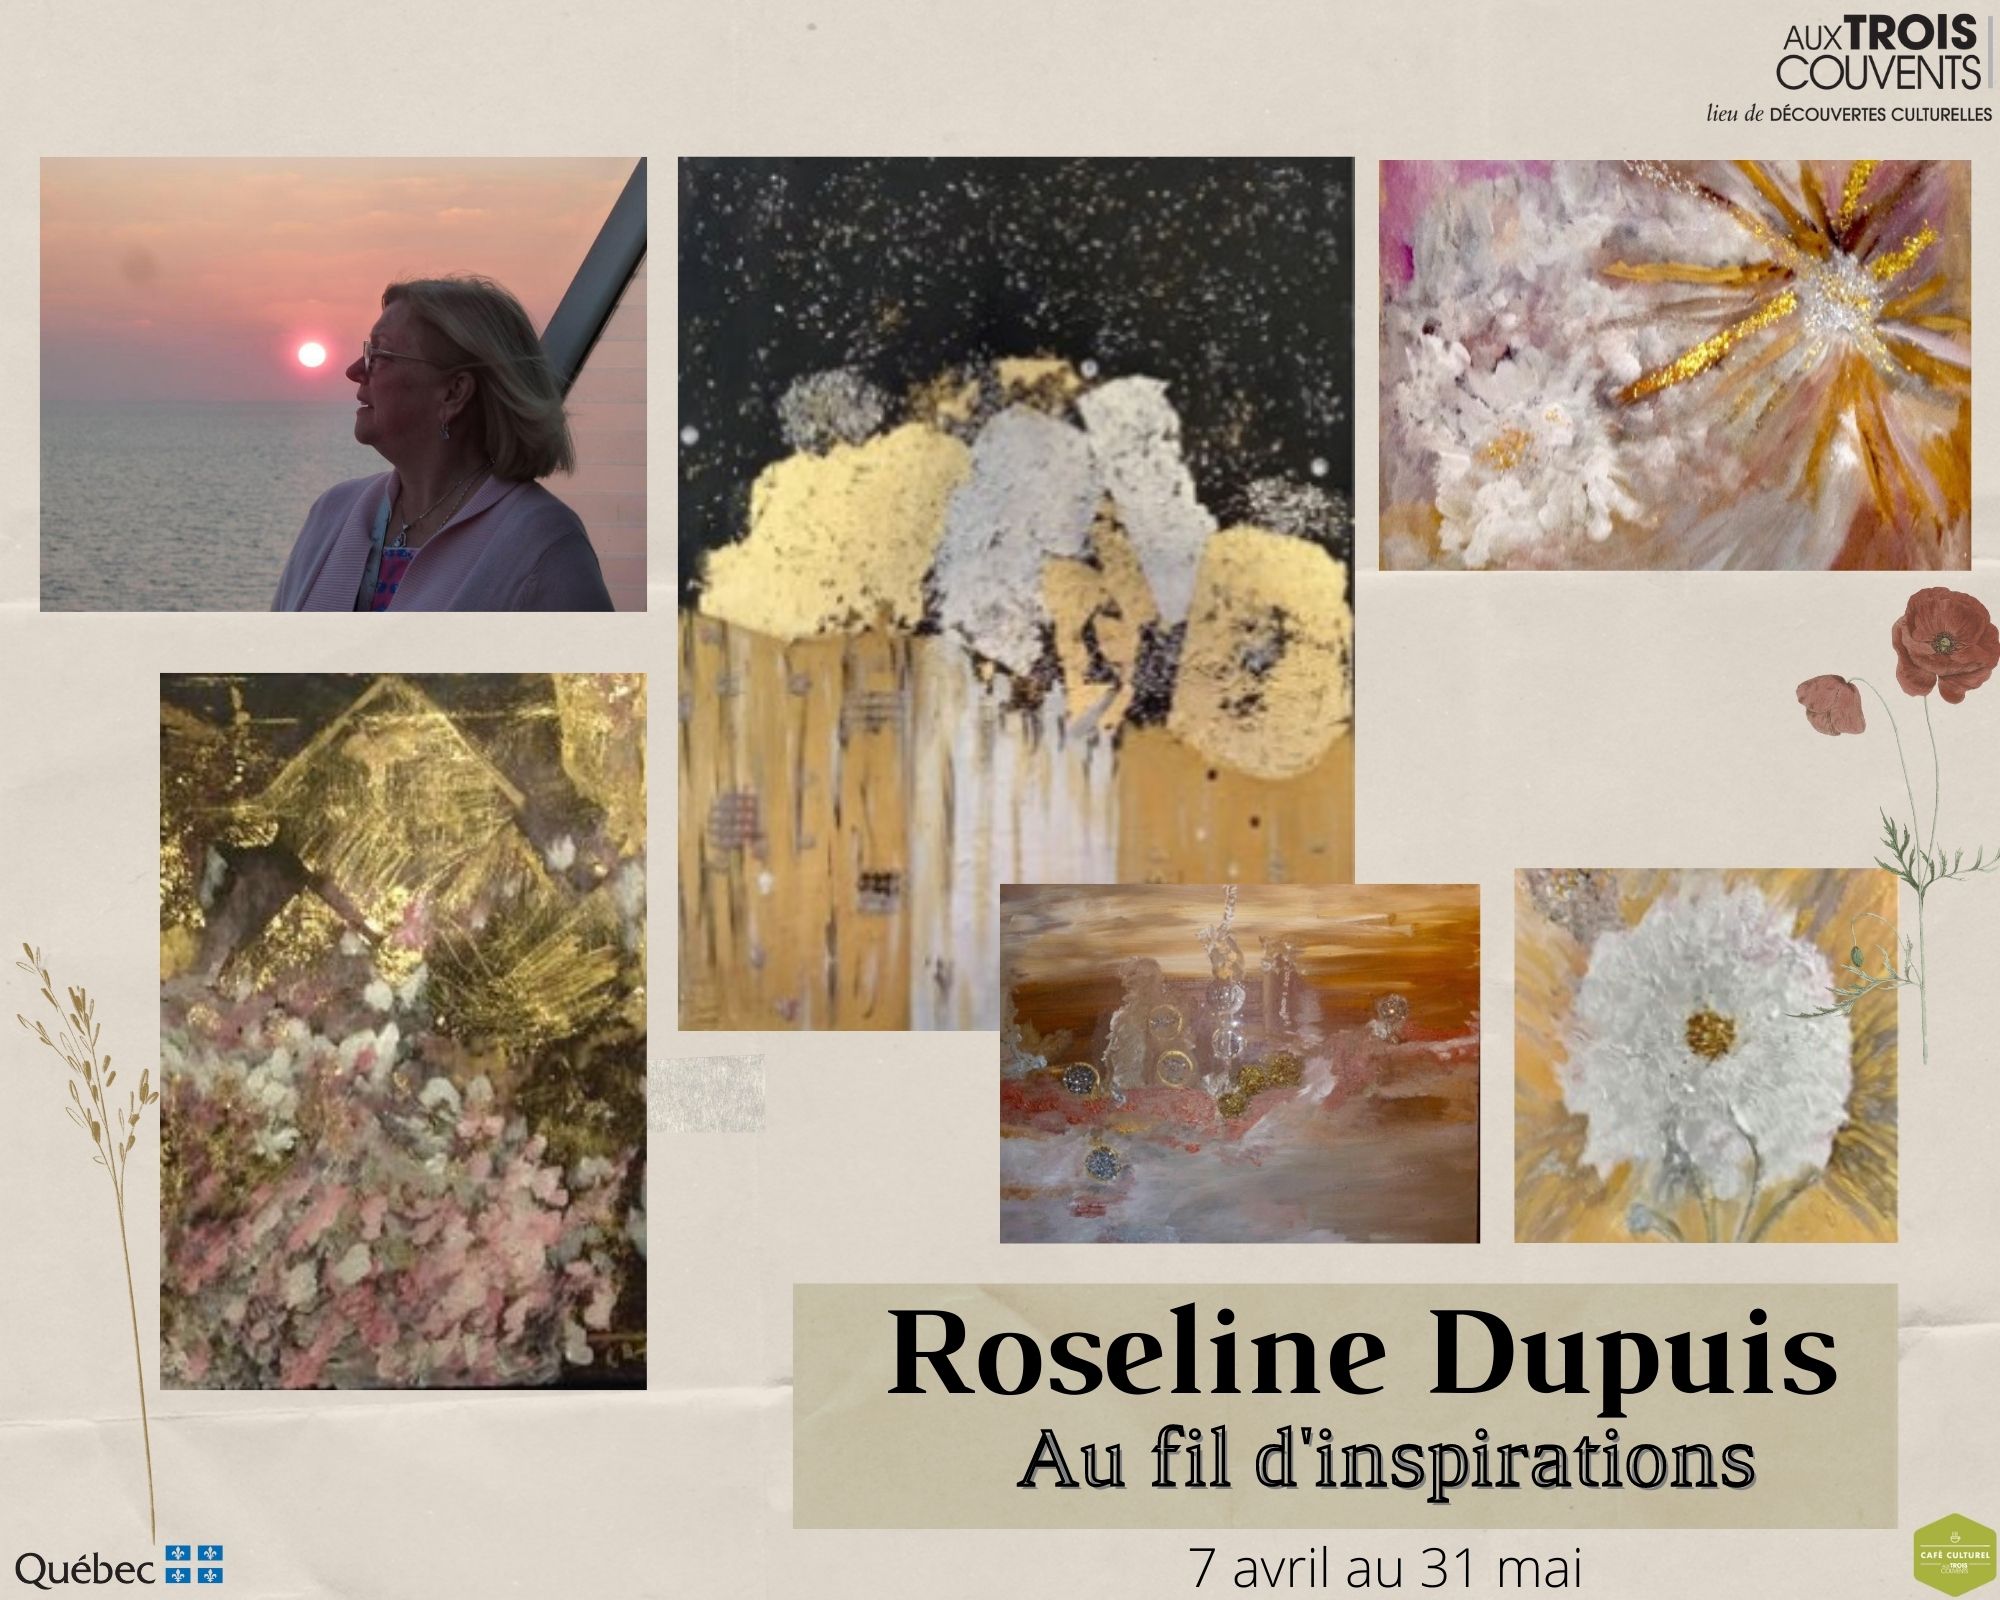 Roseline Dupuis: Au fil d’inspirations